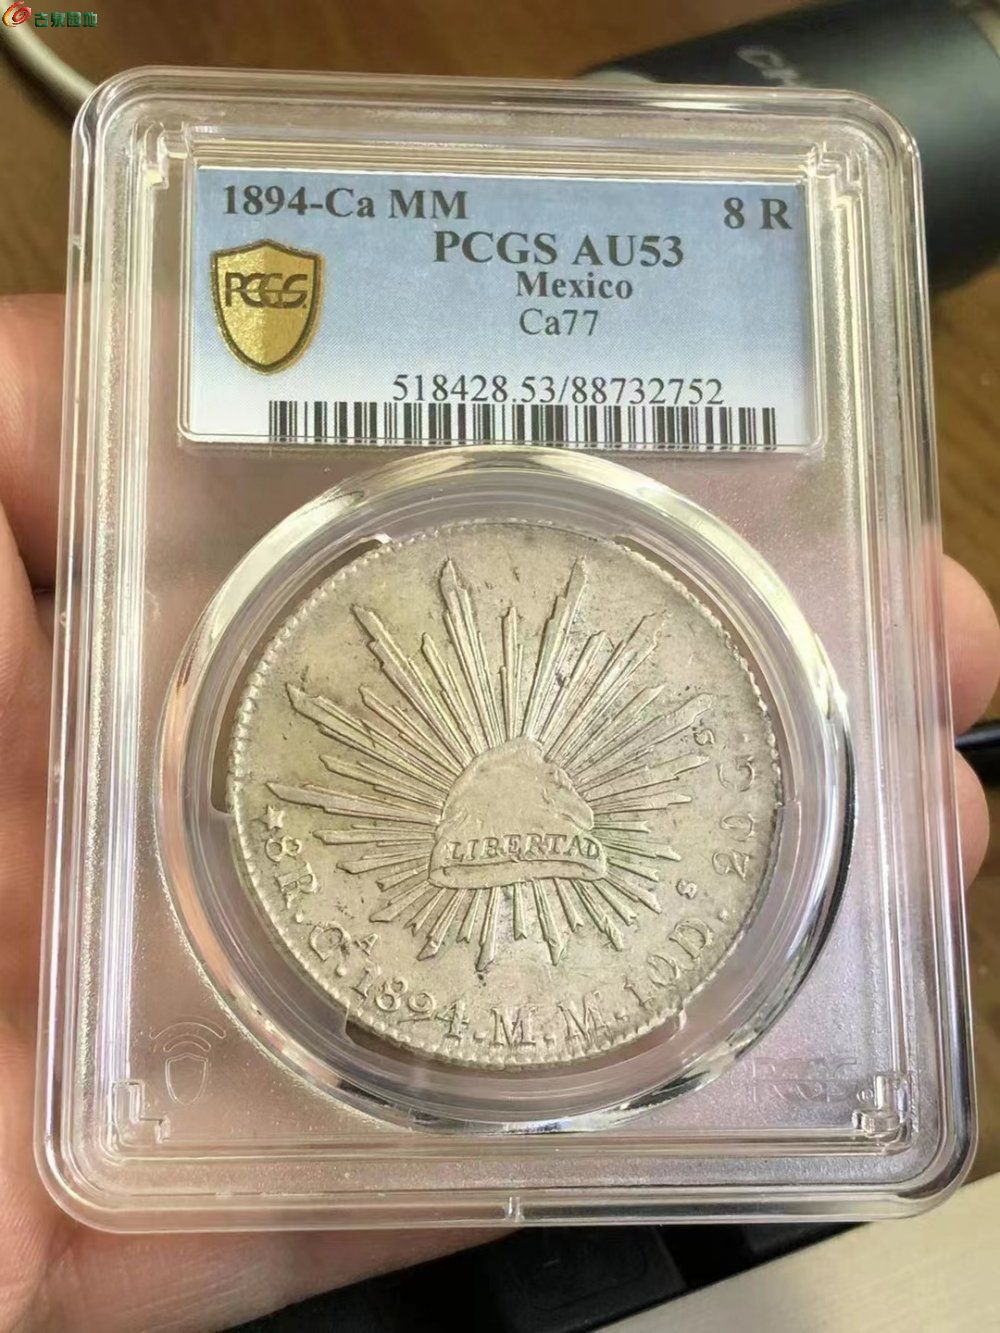 美评PCGS AU53分原光花边1894年墨西哥鹰洋银币第42名全羽毛极美品2752